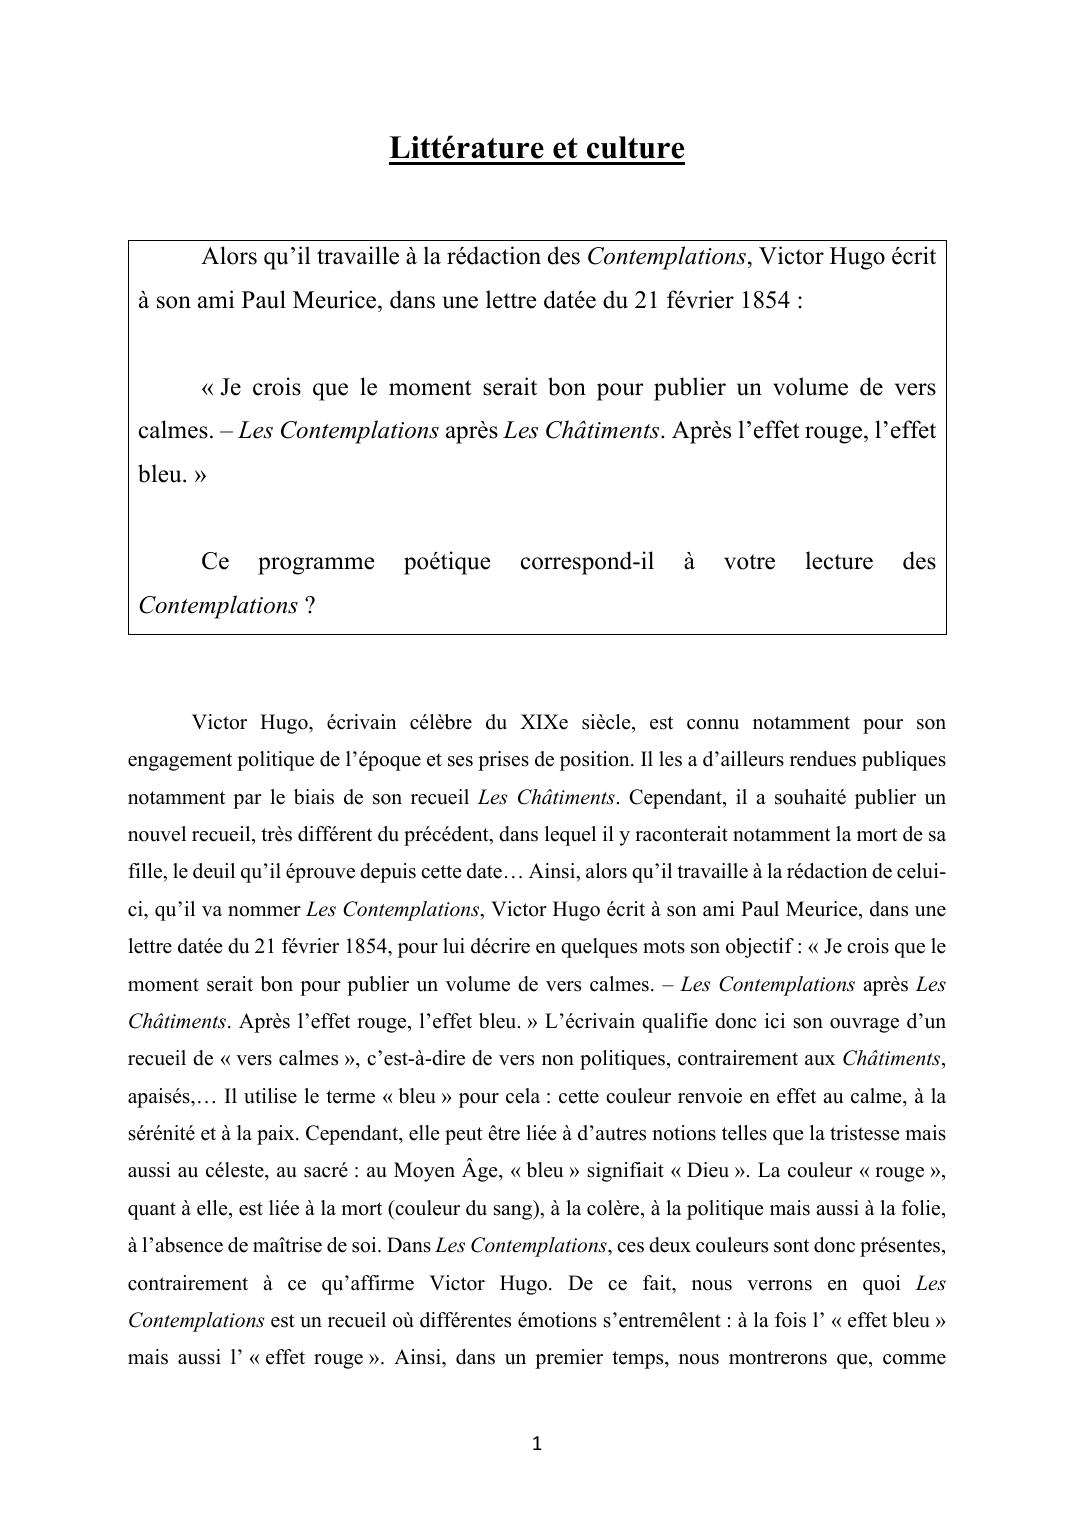 Prévisualisation du document "Après l'effet rouge, l'effet bleu", Les Contemplations de Victor Hugo